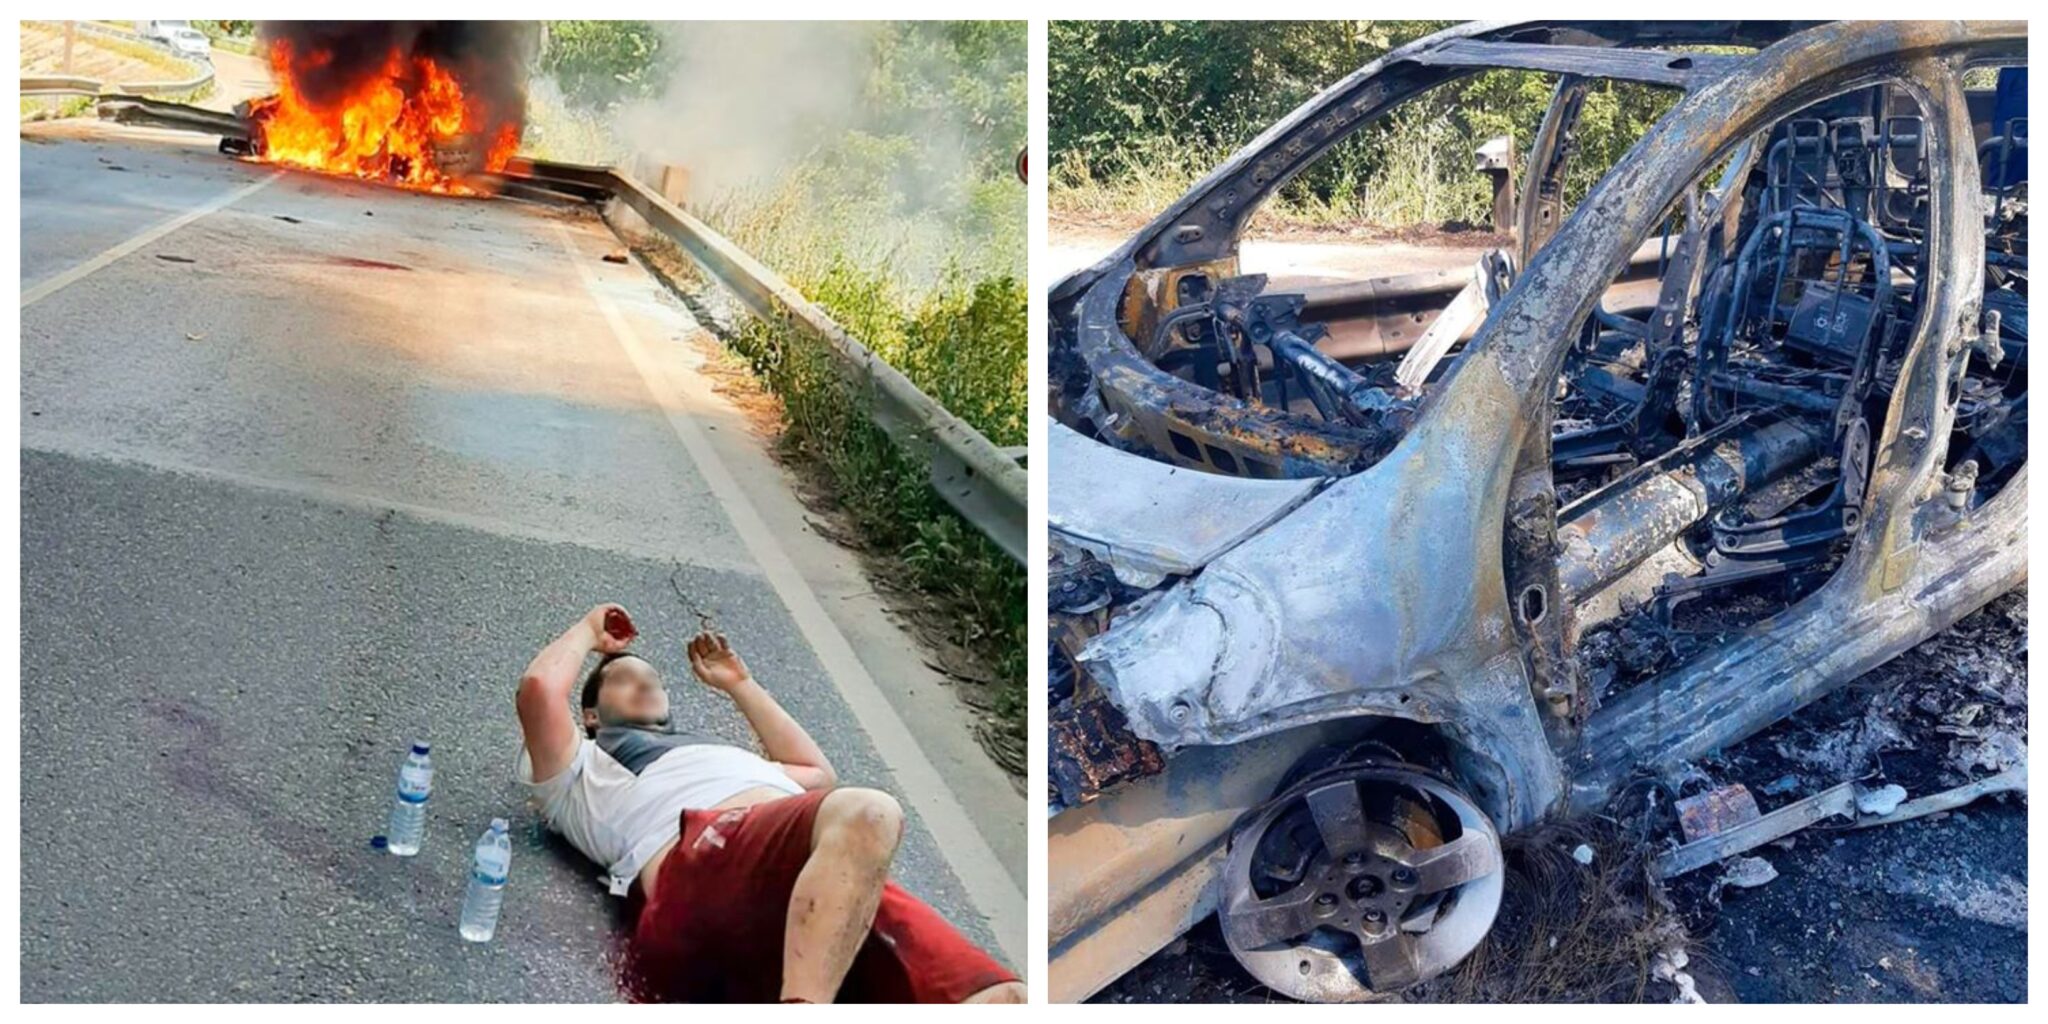 salvamento gnr scaled Condutor preso num carro em chamas é salvo por militar da GNR de folga